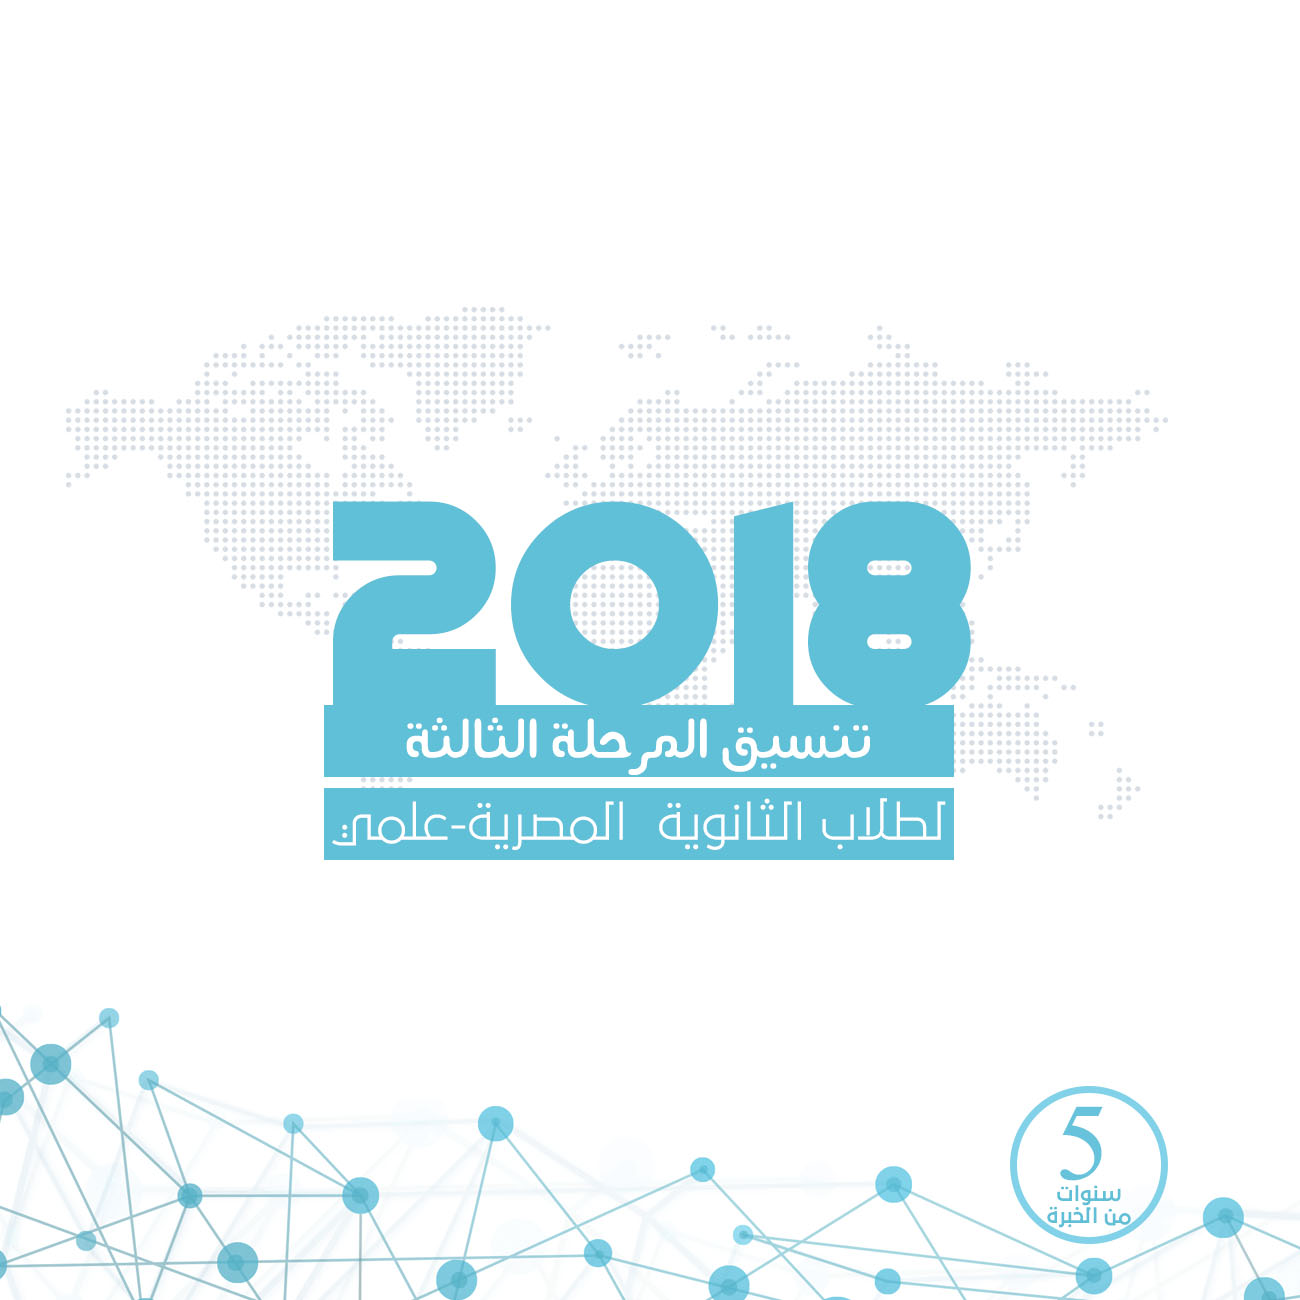 تنسيق المرحلة الثالثة للثانوية العامة المصرية (علمي) مع النسبة المئوية -2018-